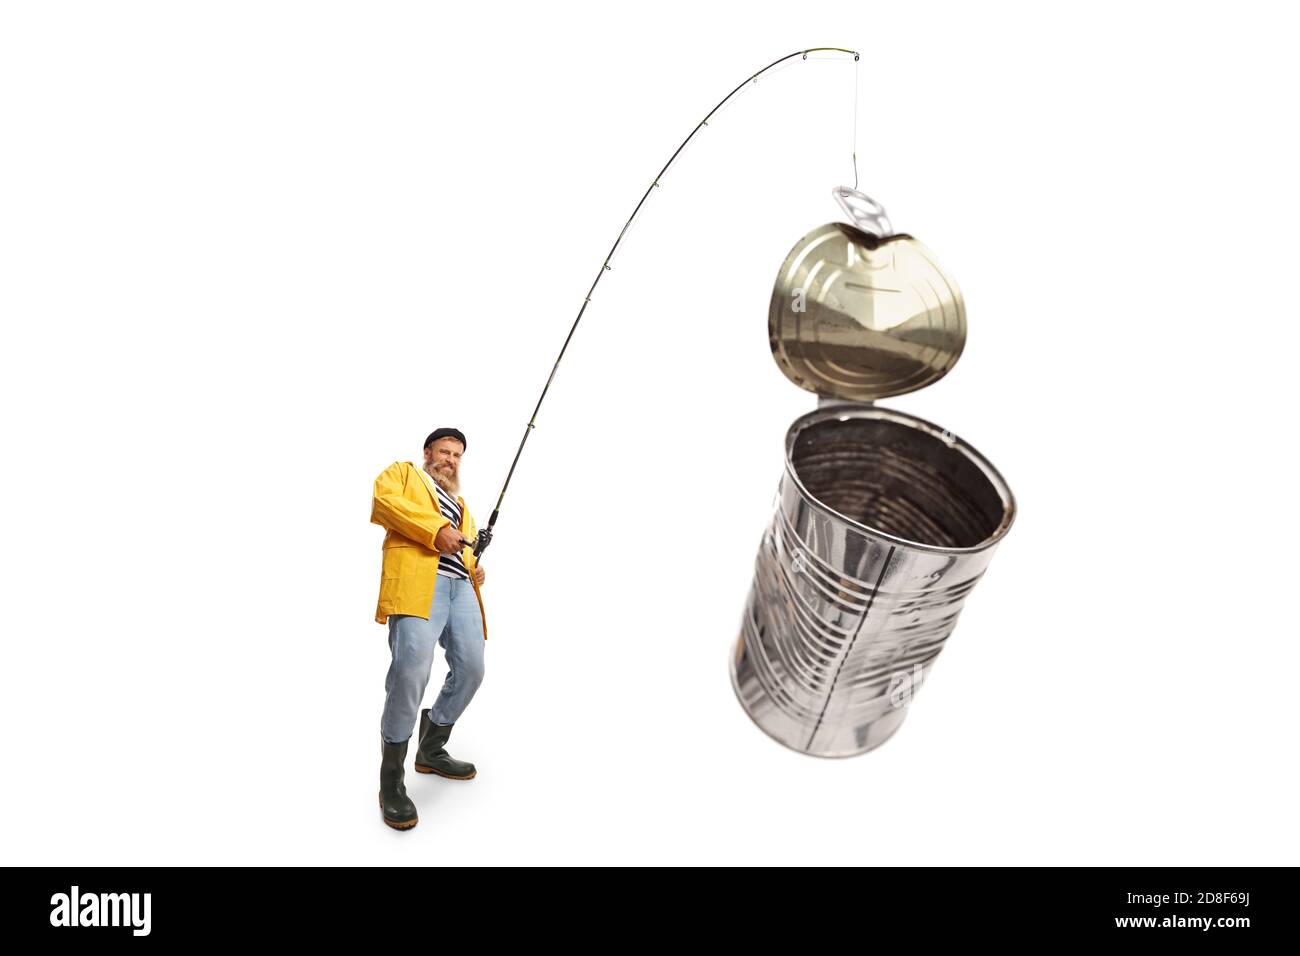 Fischer, der Zinndose auf einer isolierten Angelrute fängt Weißer Hintergrund Stockfoto